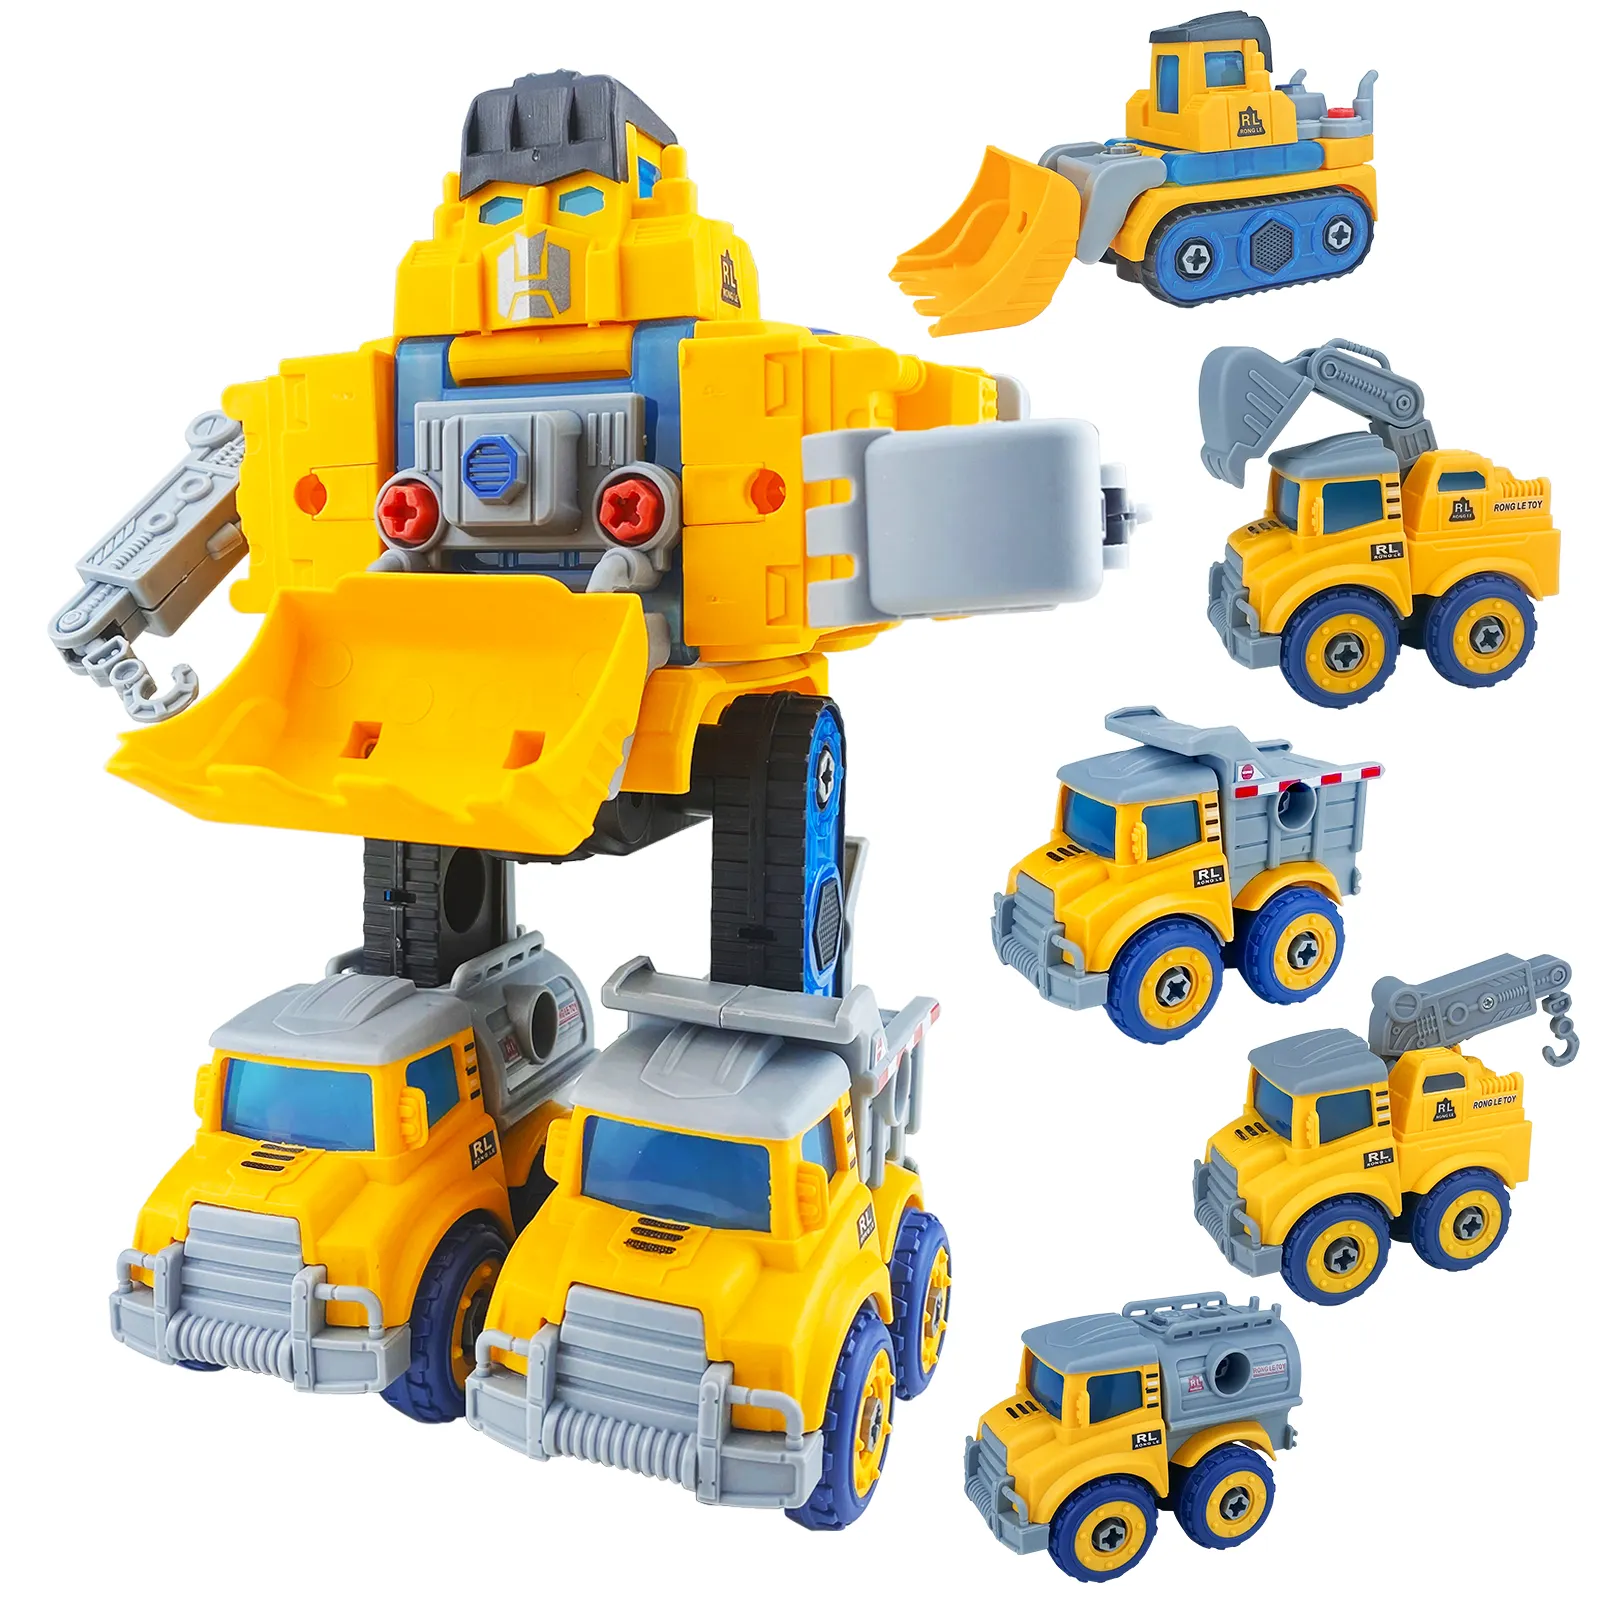 Çin toptan imalatı montaj kamyon Diecast kombinasyonu almak deformasyon çocuklar oyuncak seti mühendislik araçlar Robot oyuncaklar